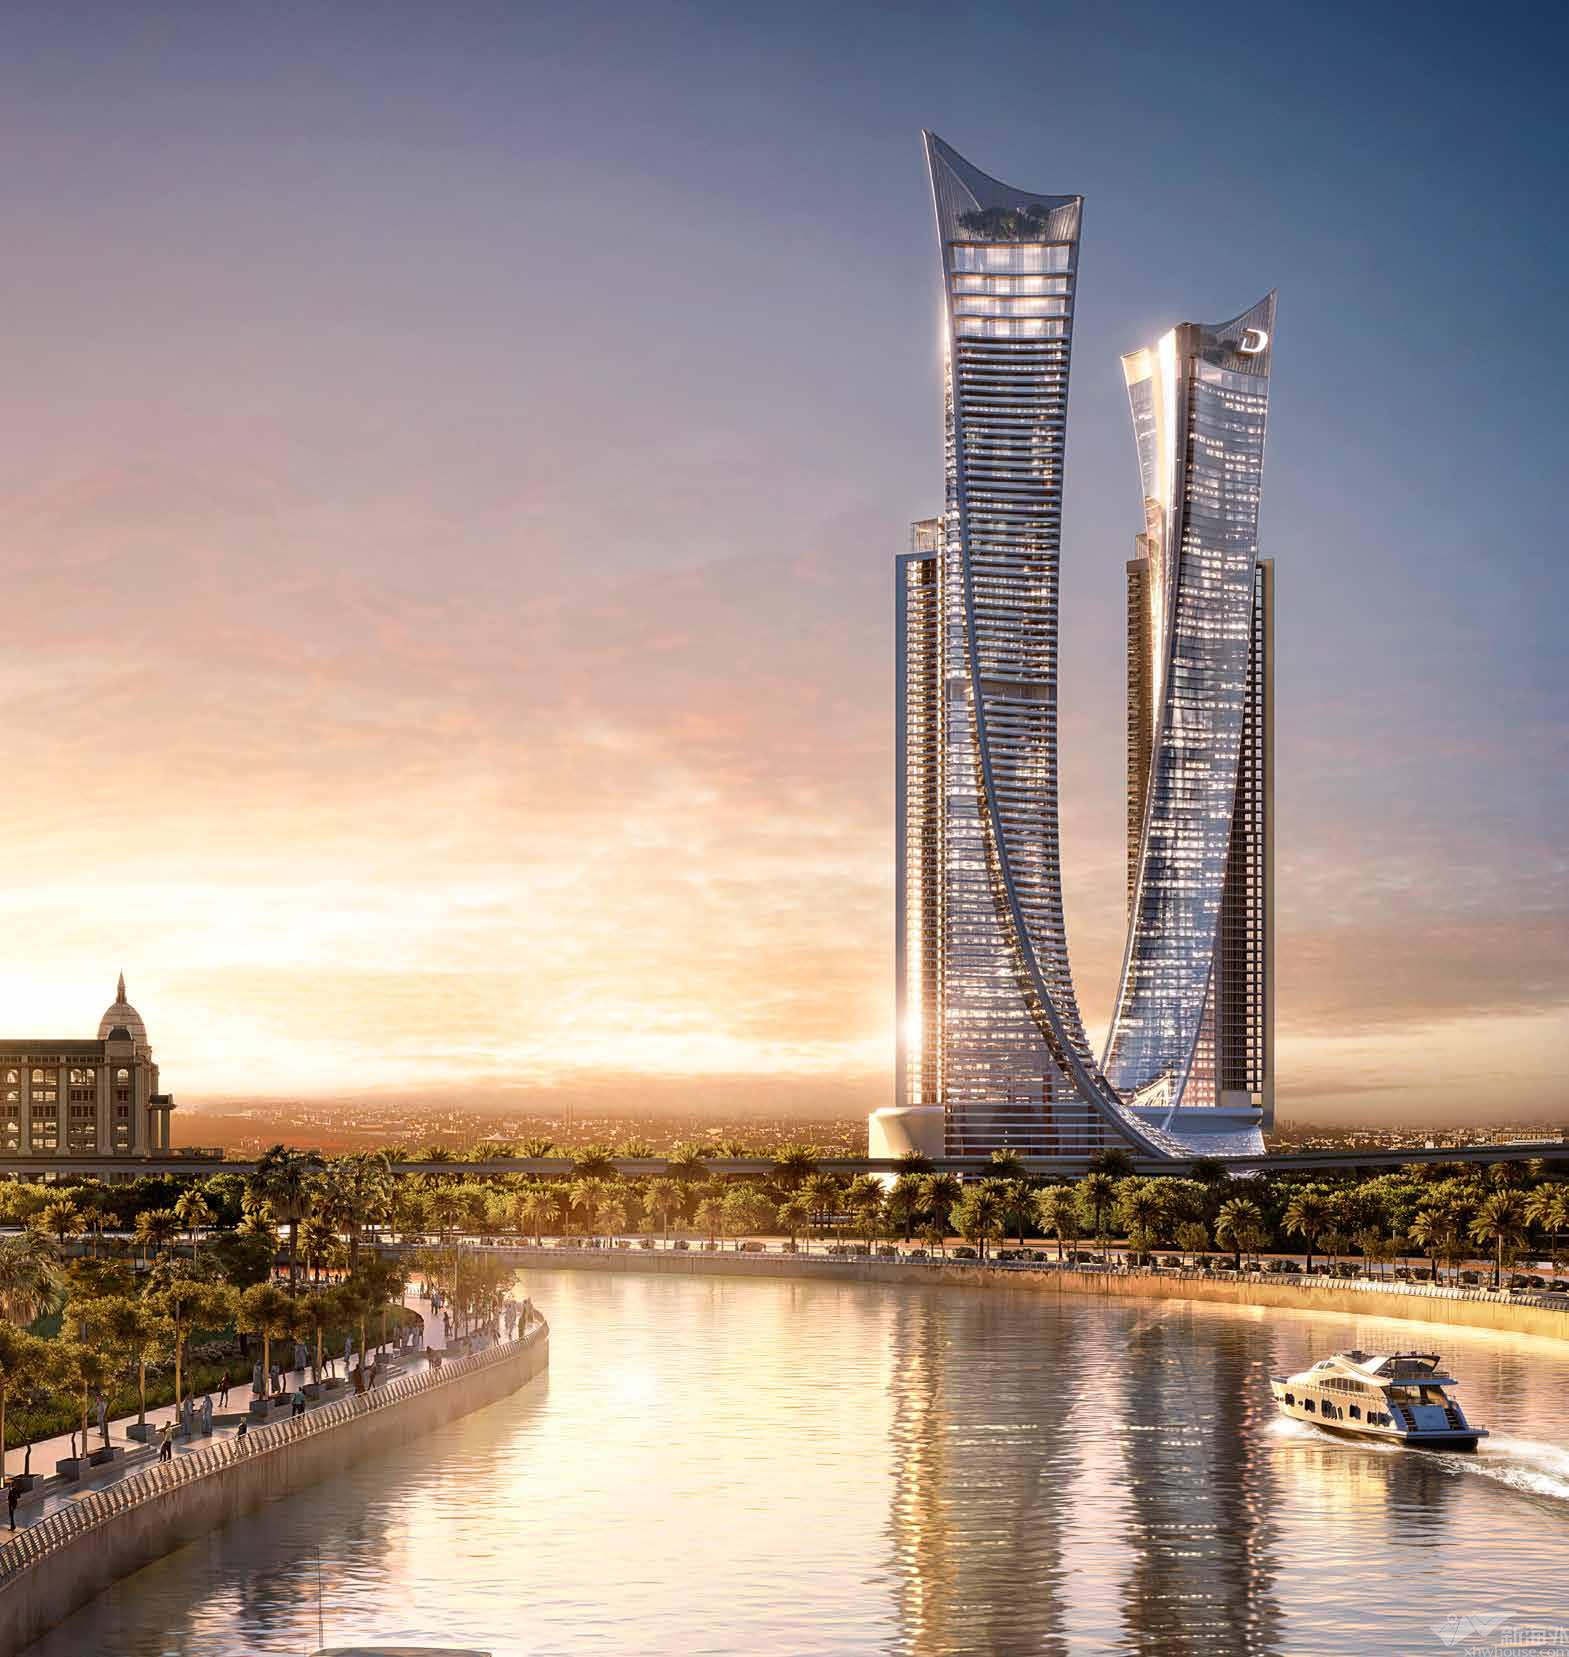 迪拜未来博物馆正式开放，再造当代建筑的“奇迹” - 周末画报